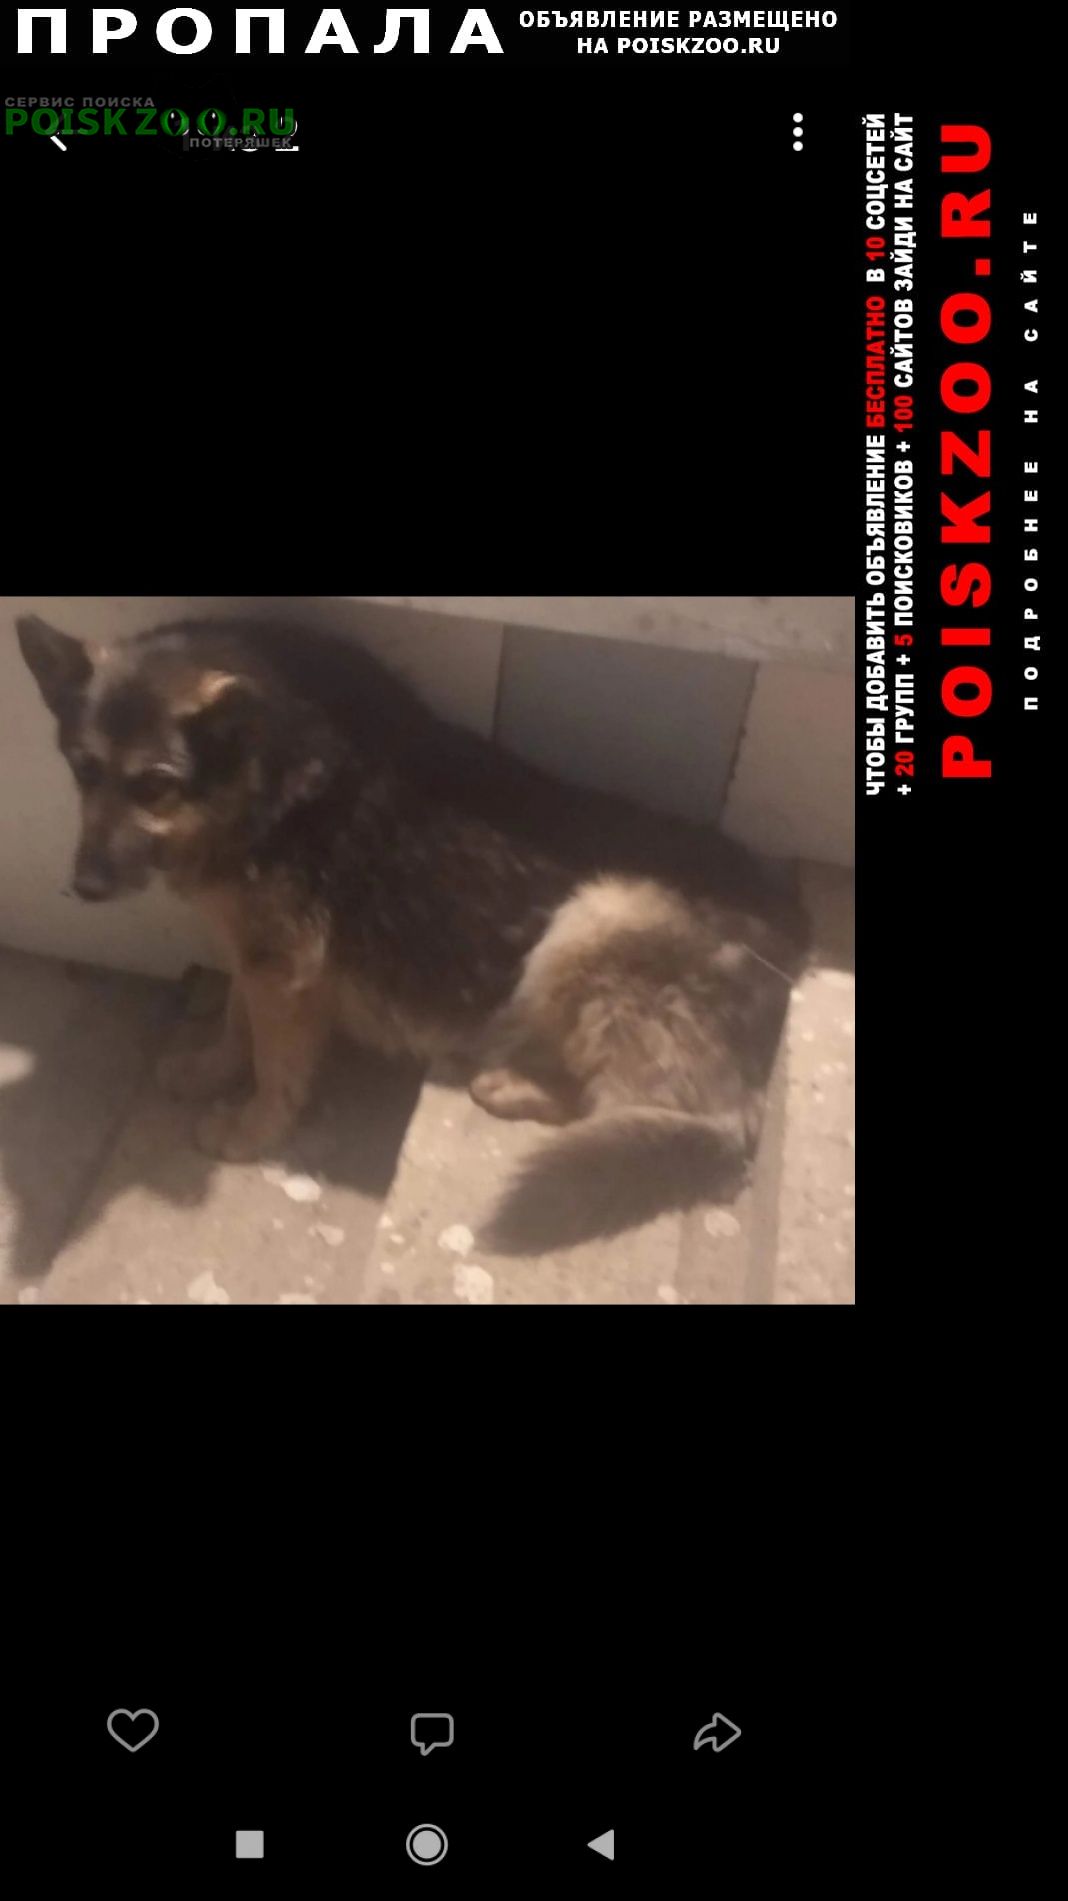 Пропала собака помогите найти собаку Нарофоминск